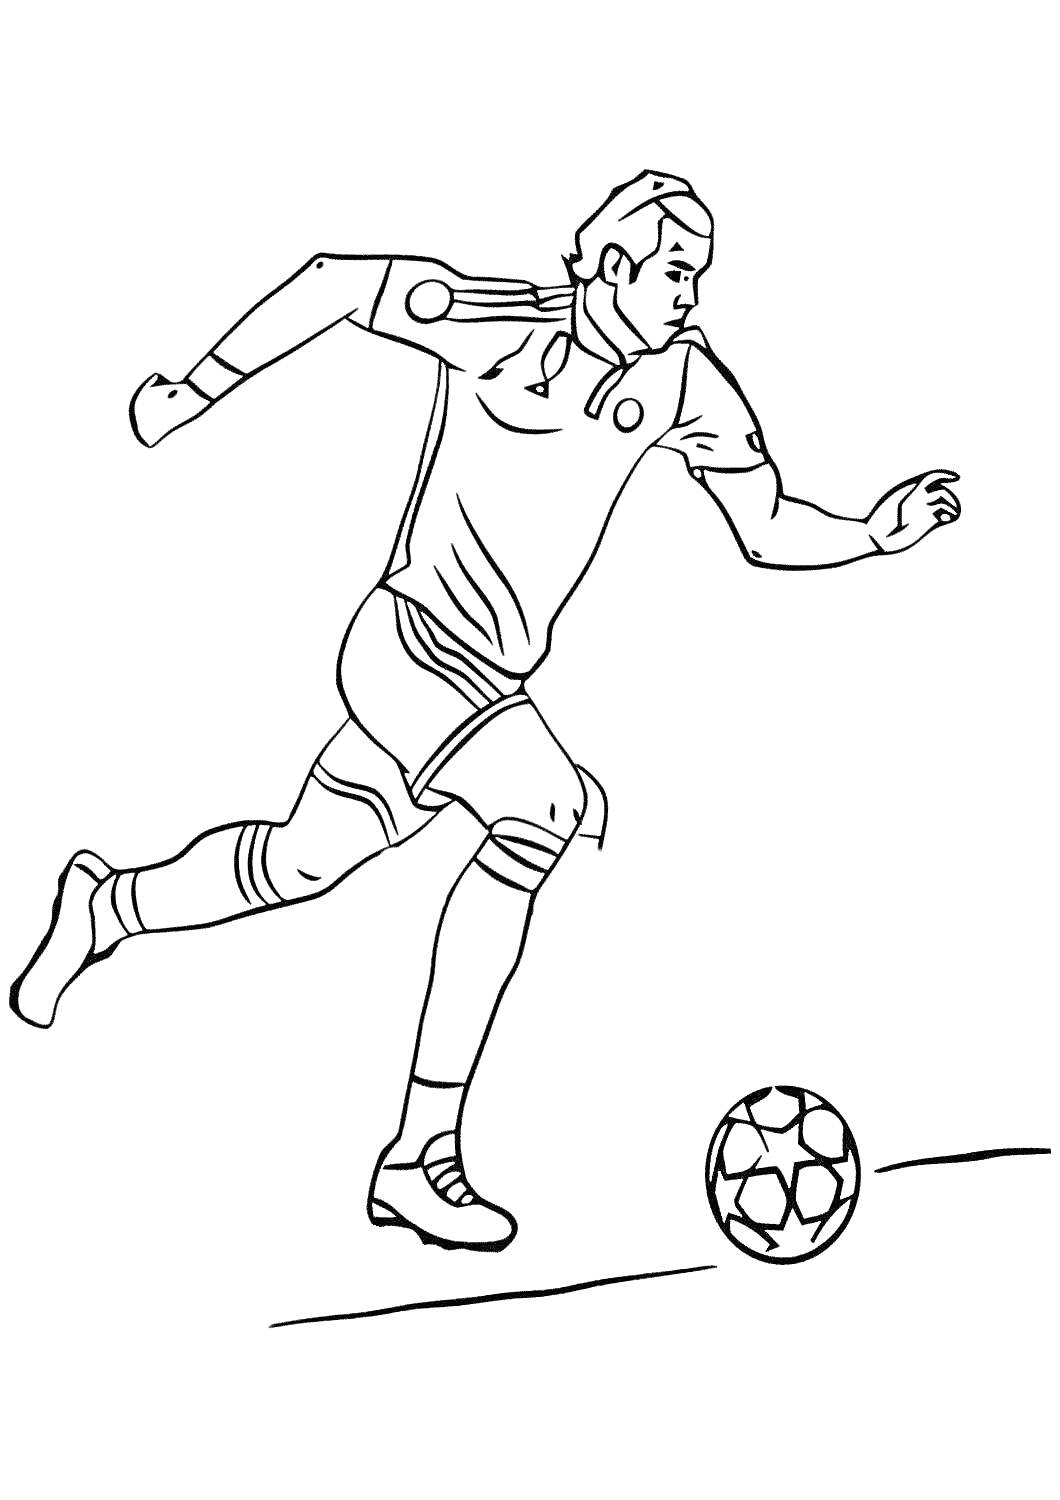 Футболист бежит с мячом